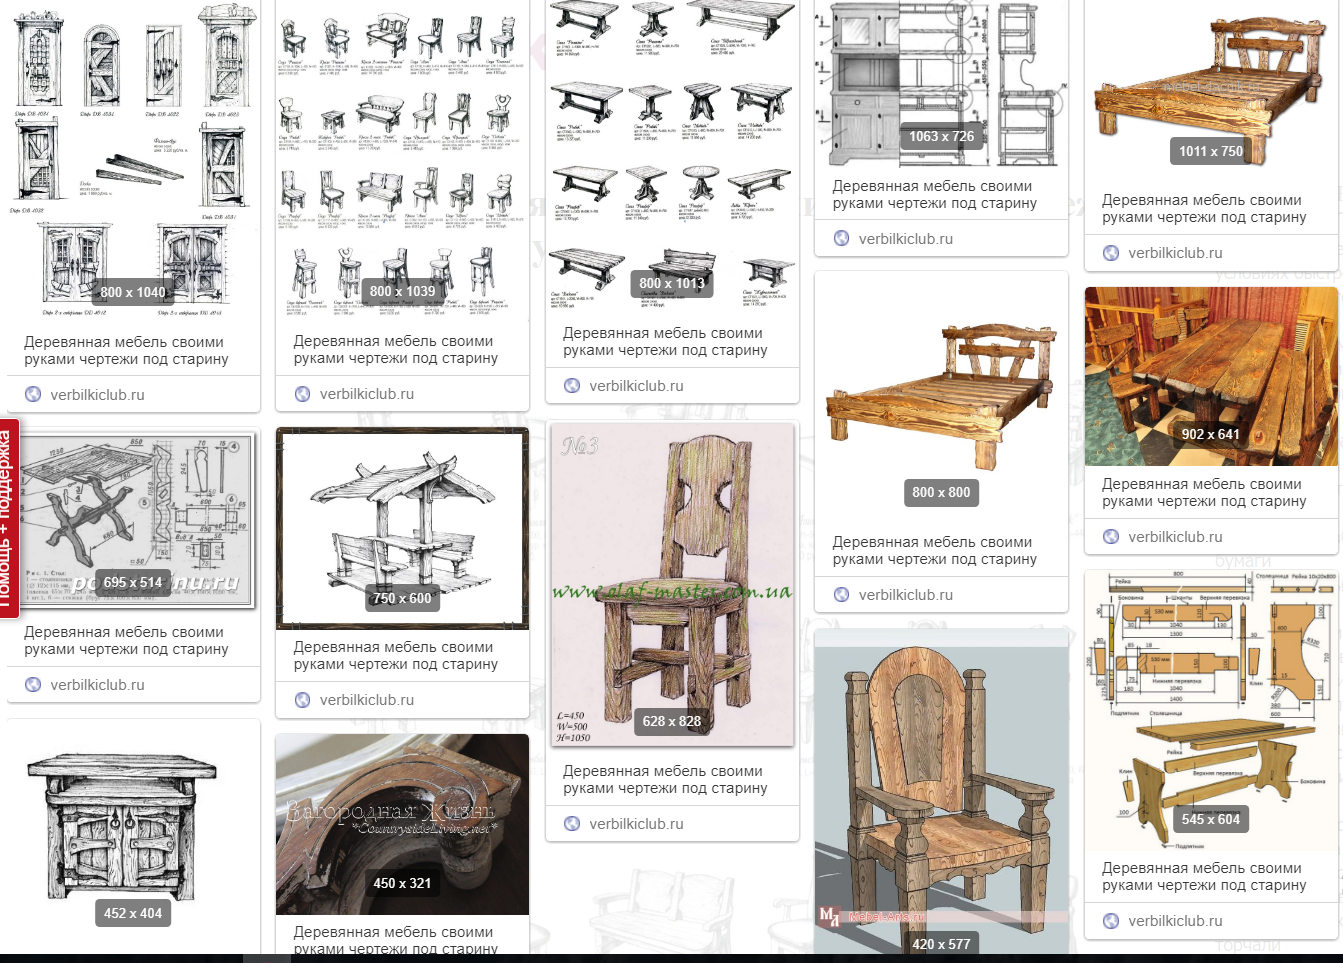 Мебель под старину своими руками, чертежи и схемы, алгоритм действий